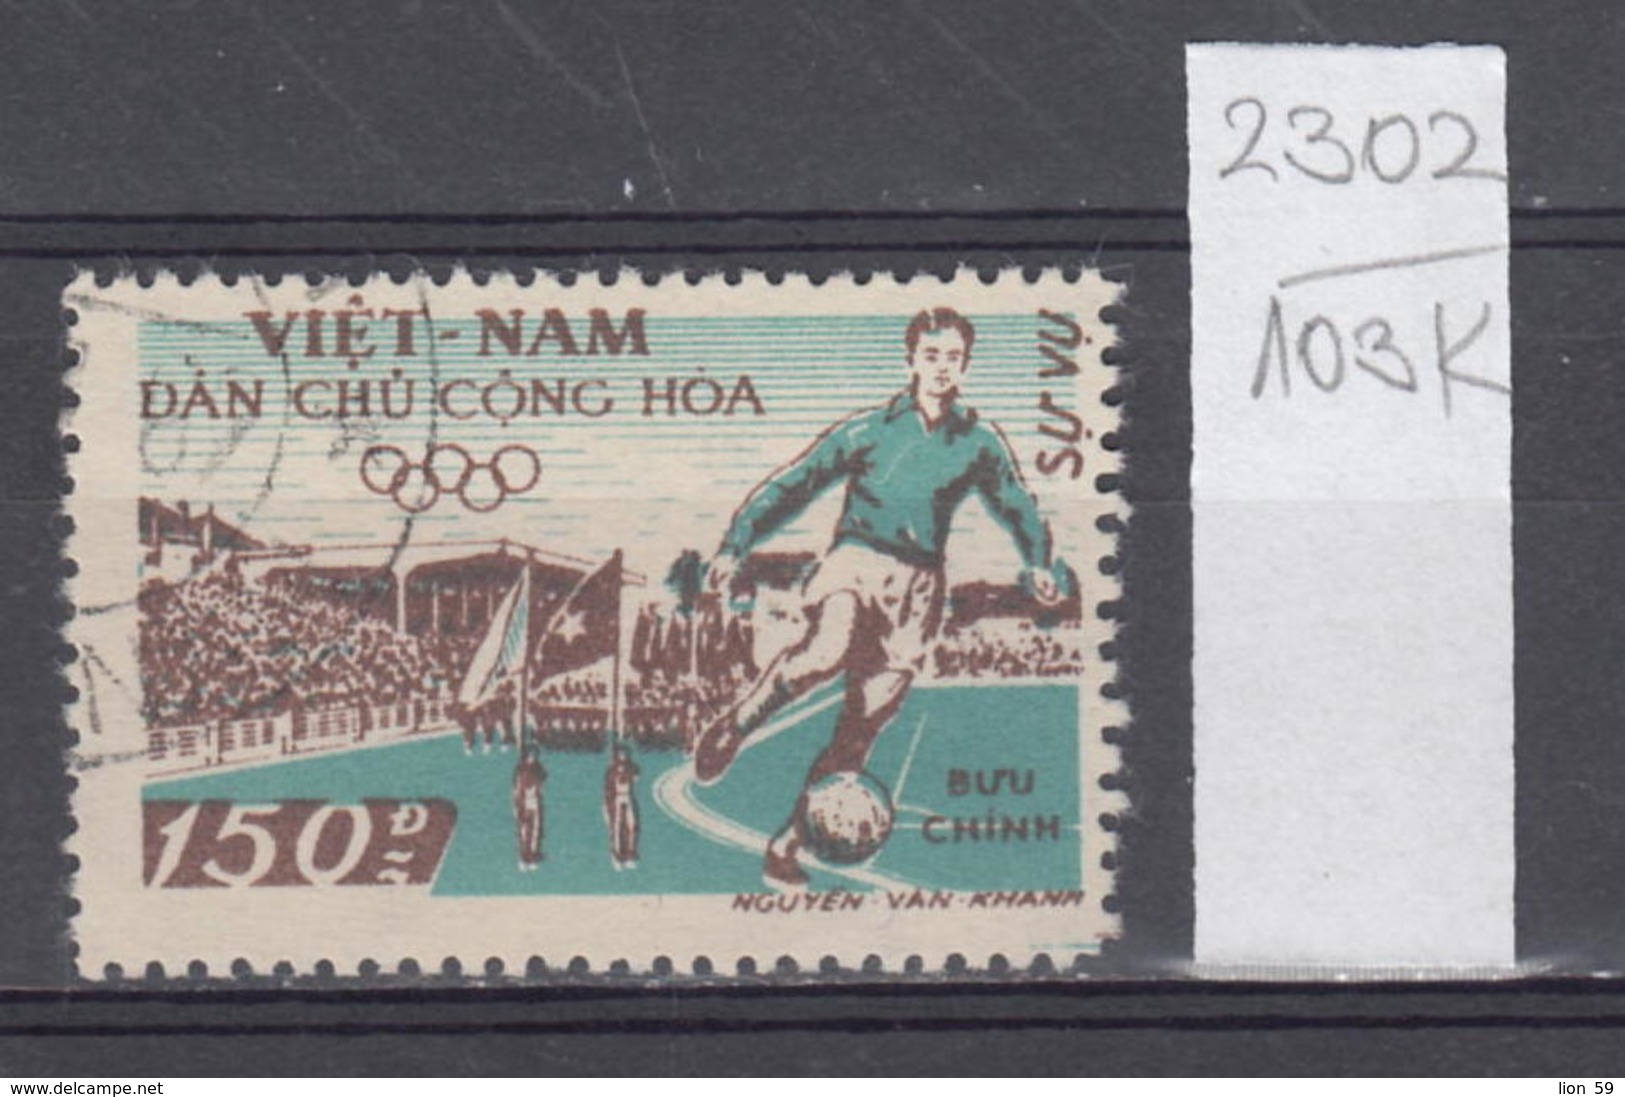 103K2302 / 1958 - Michel Nr. 32 Used ( O ) Dienstmarken - Hanoi Stadium Soccer Calcio Football , North Vietnam Viet Nam - Vietnam